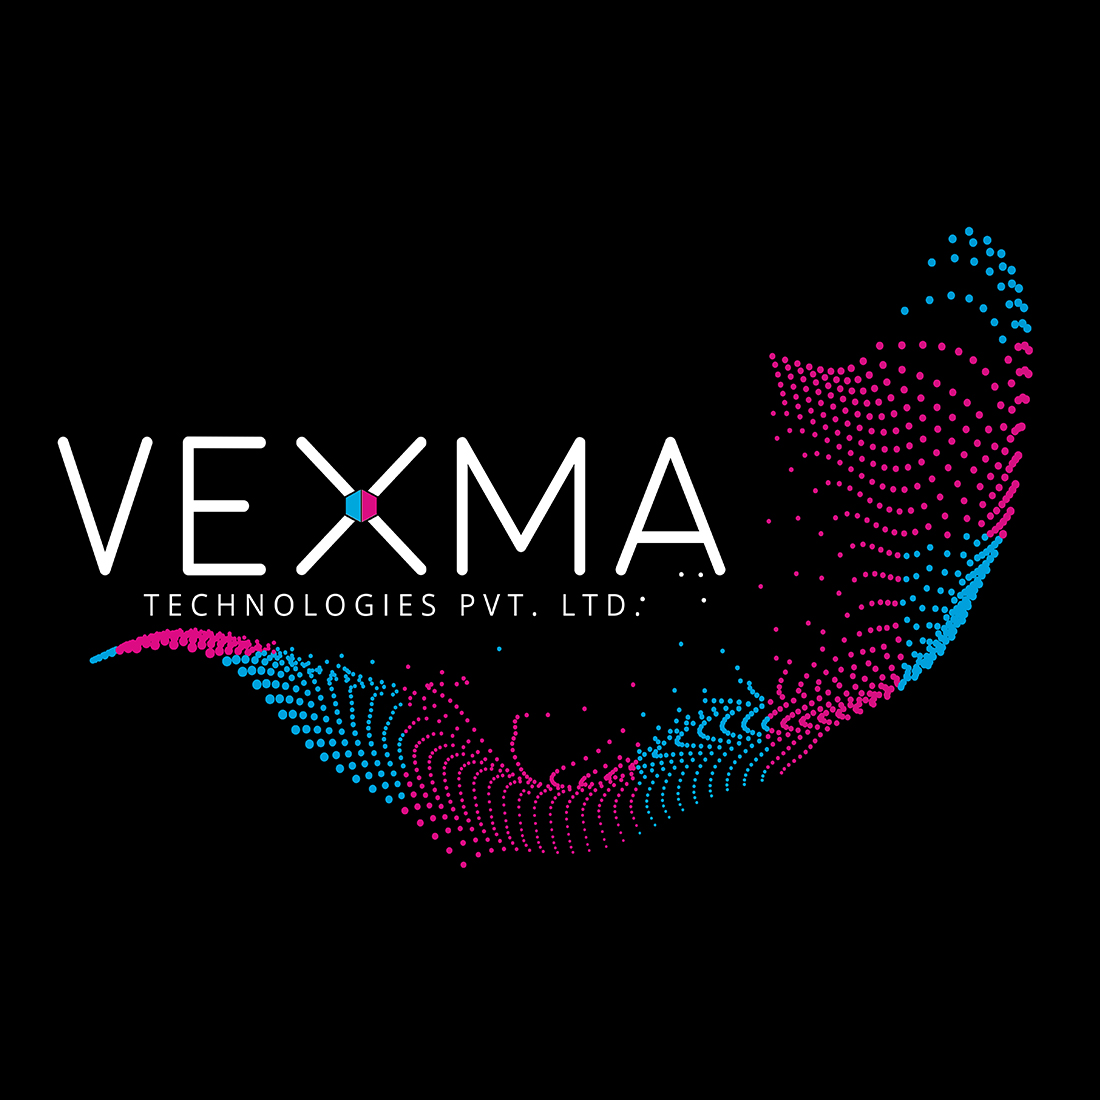 Vexma Technologies Pvt Ltd